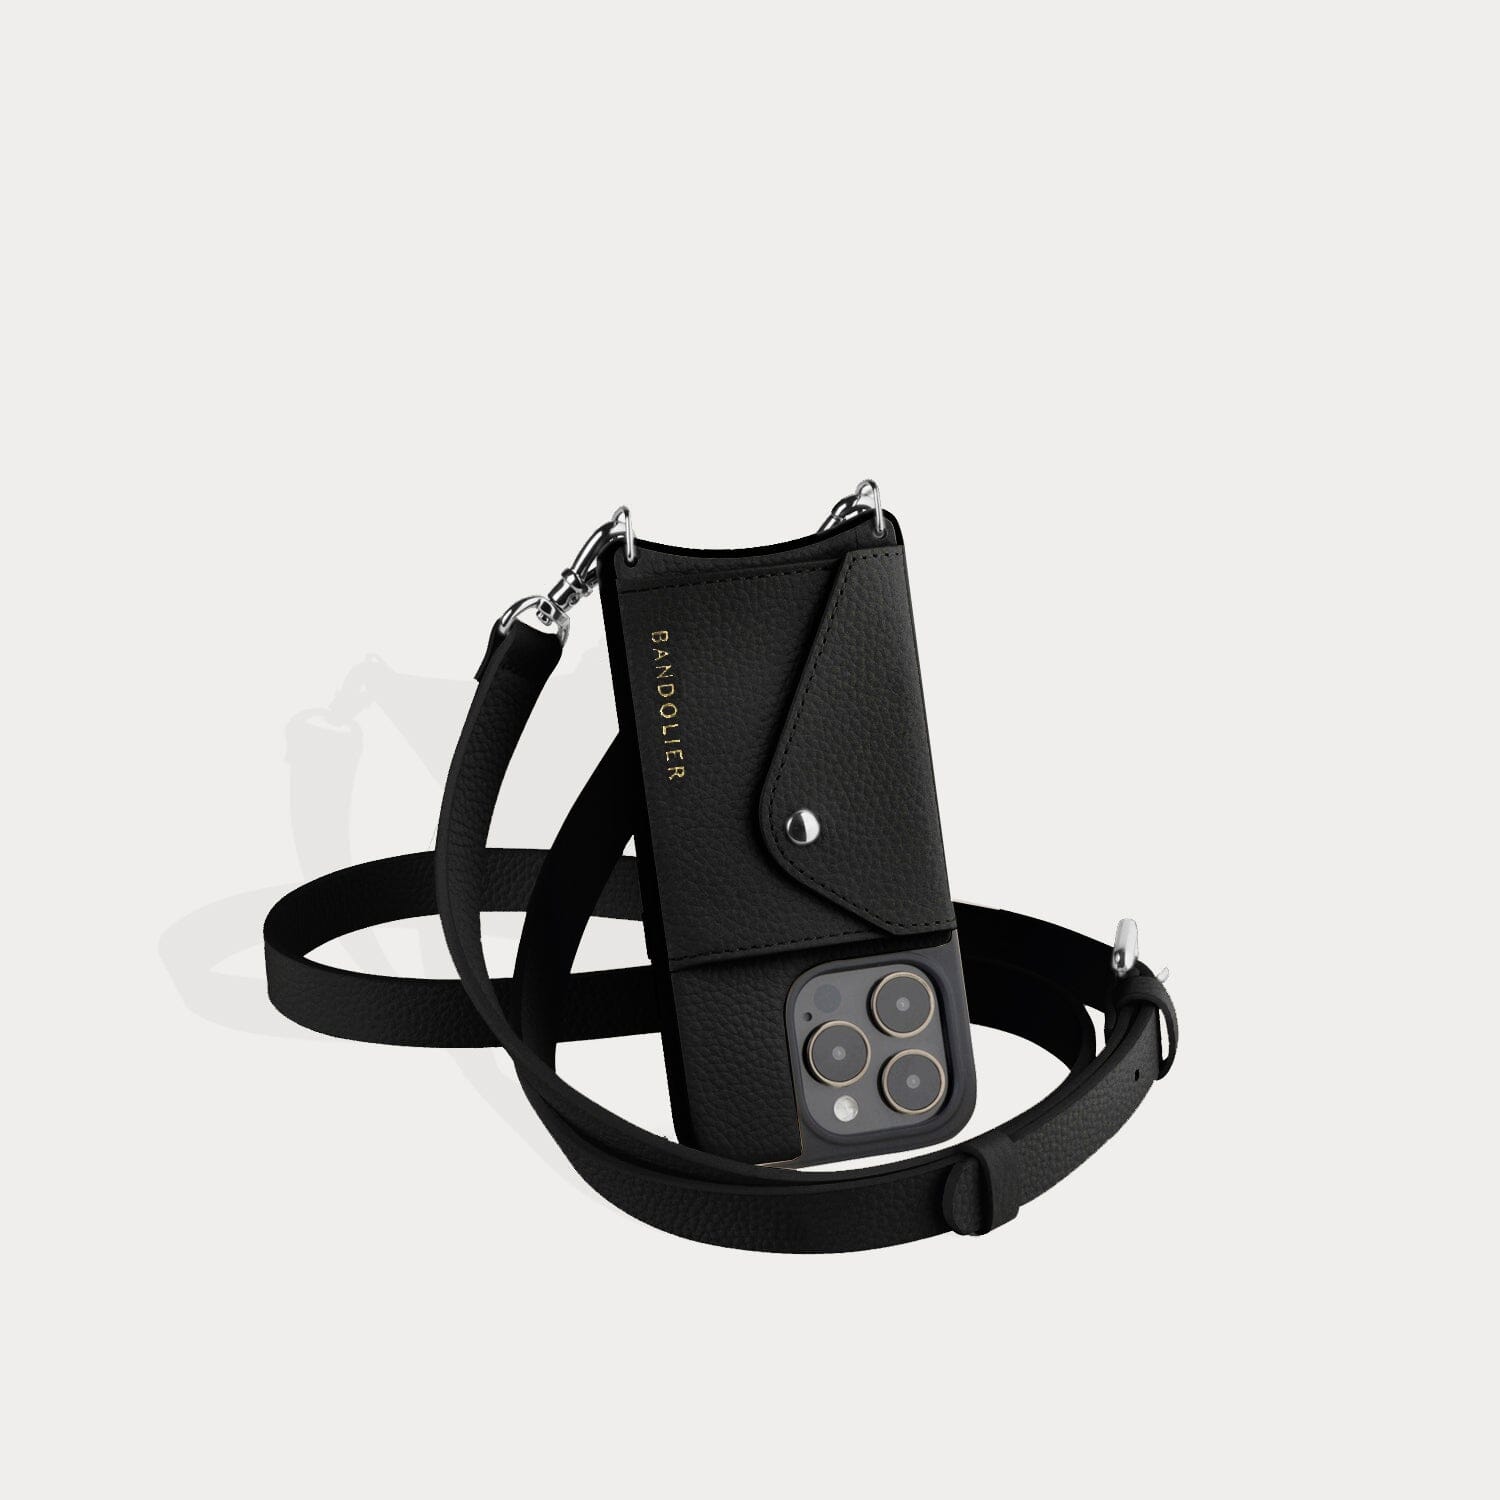 Long Shoulder / Short Crossbody Strap 40 Inch Length 1 Inch Wide Leather  Purse/bag Shoulder Strap Choose Leather Color & Hook Style 